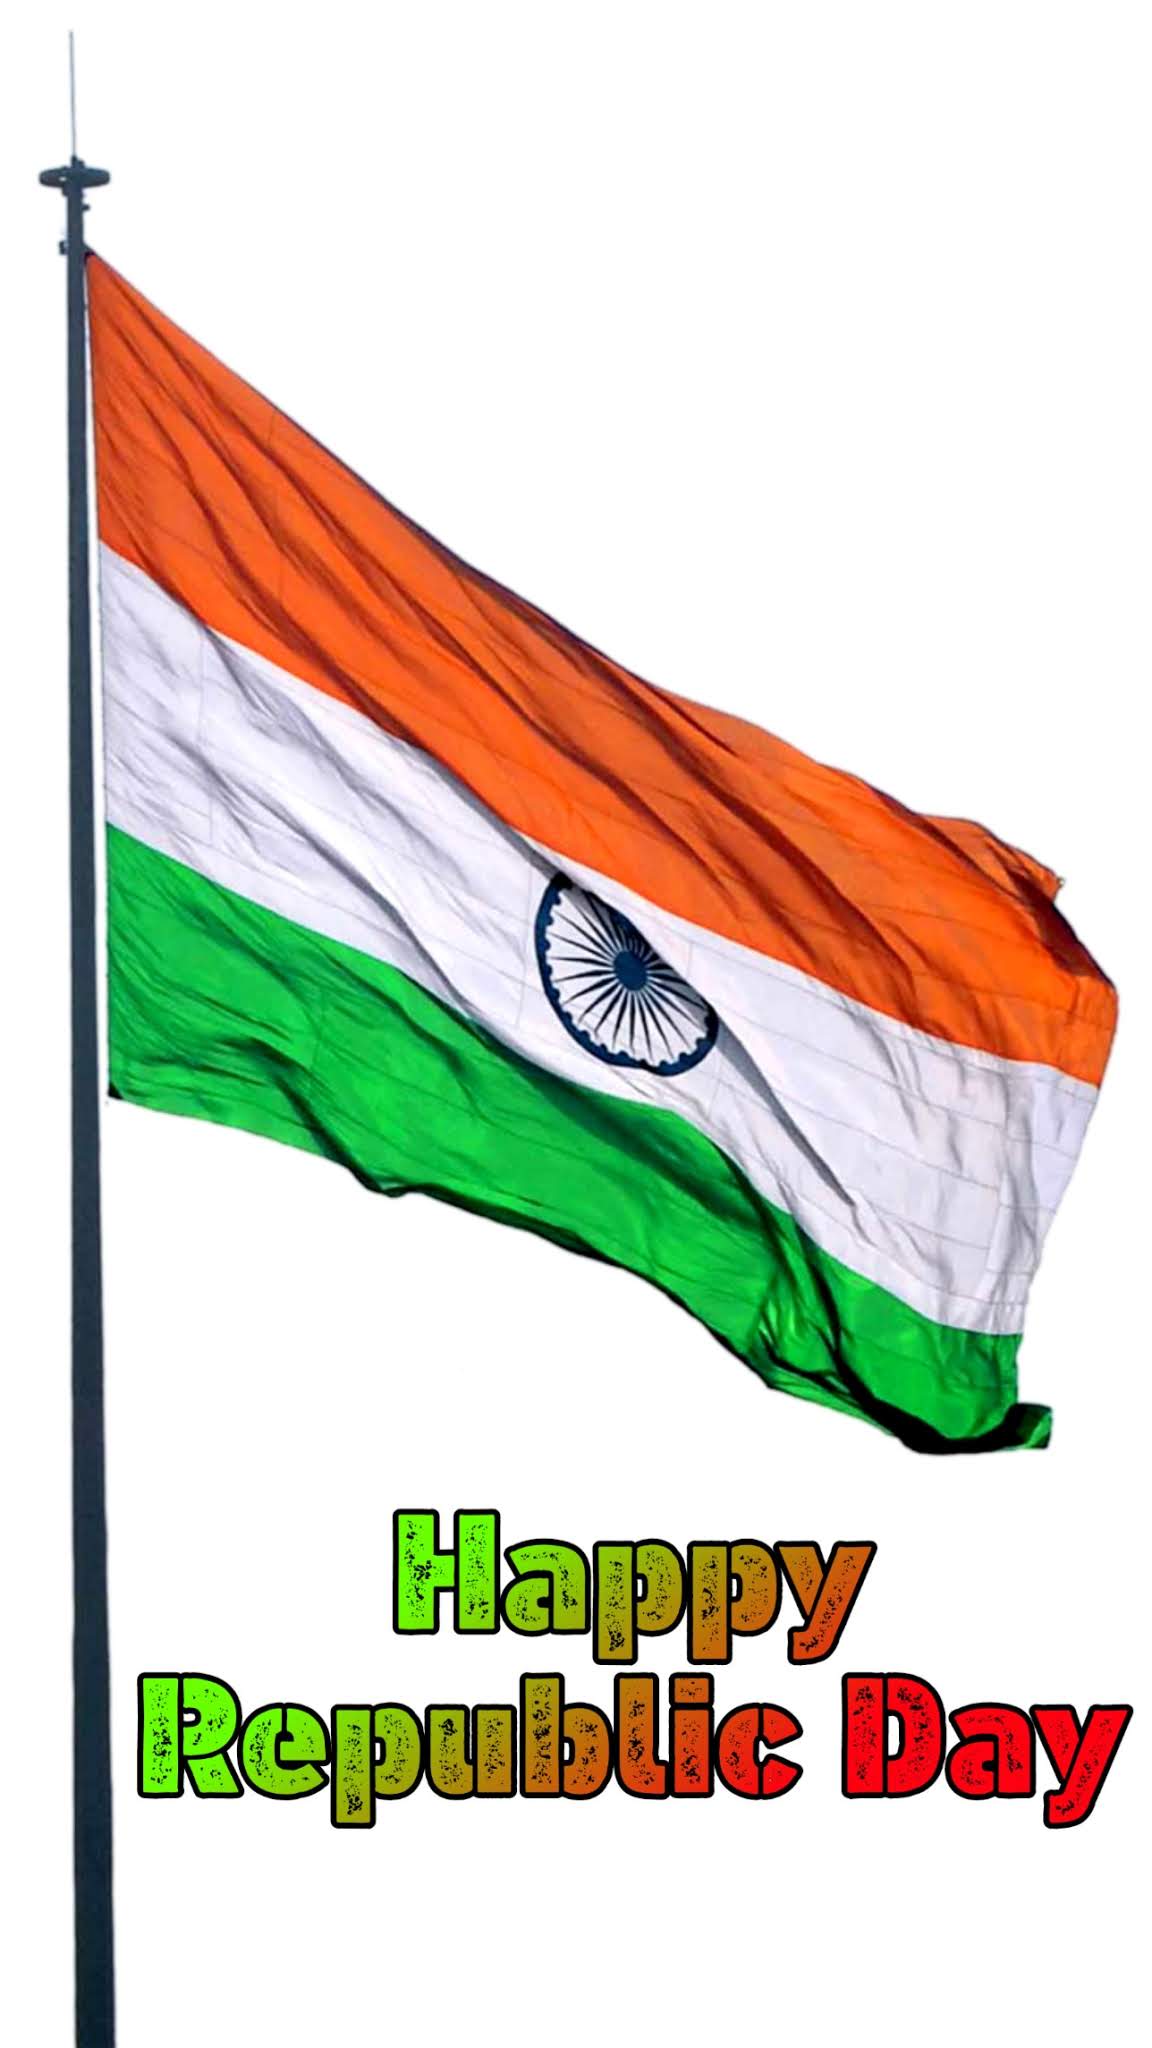 गणतंत्र दिवस (26 जनवरी) मोबाइल वॉलपेपर और शुभकामना संदेश